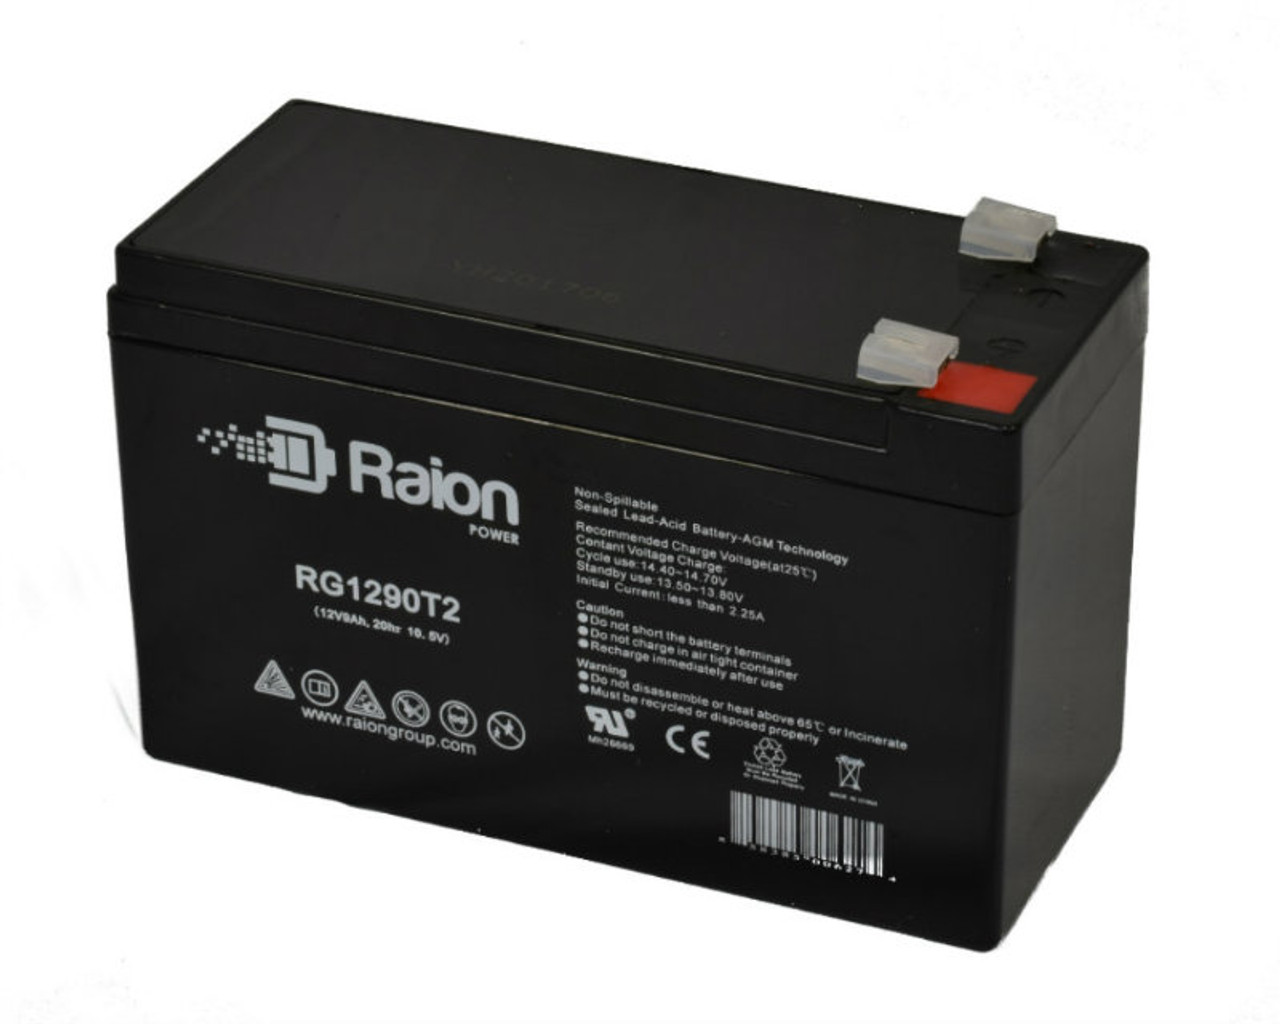 Raion Power RG1290T2 12V 9Ah AGM Battery for SigmasTek SP12-9HR